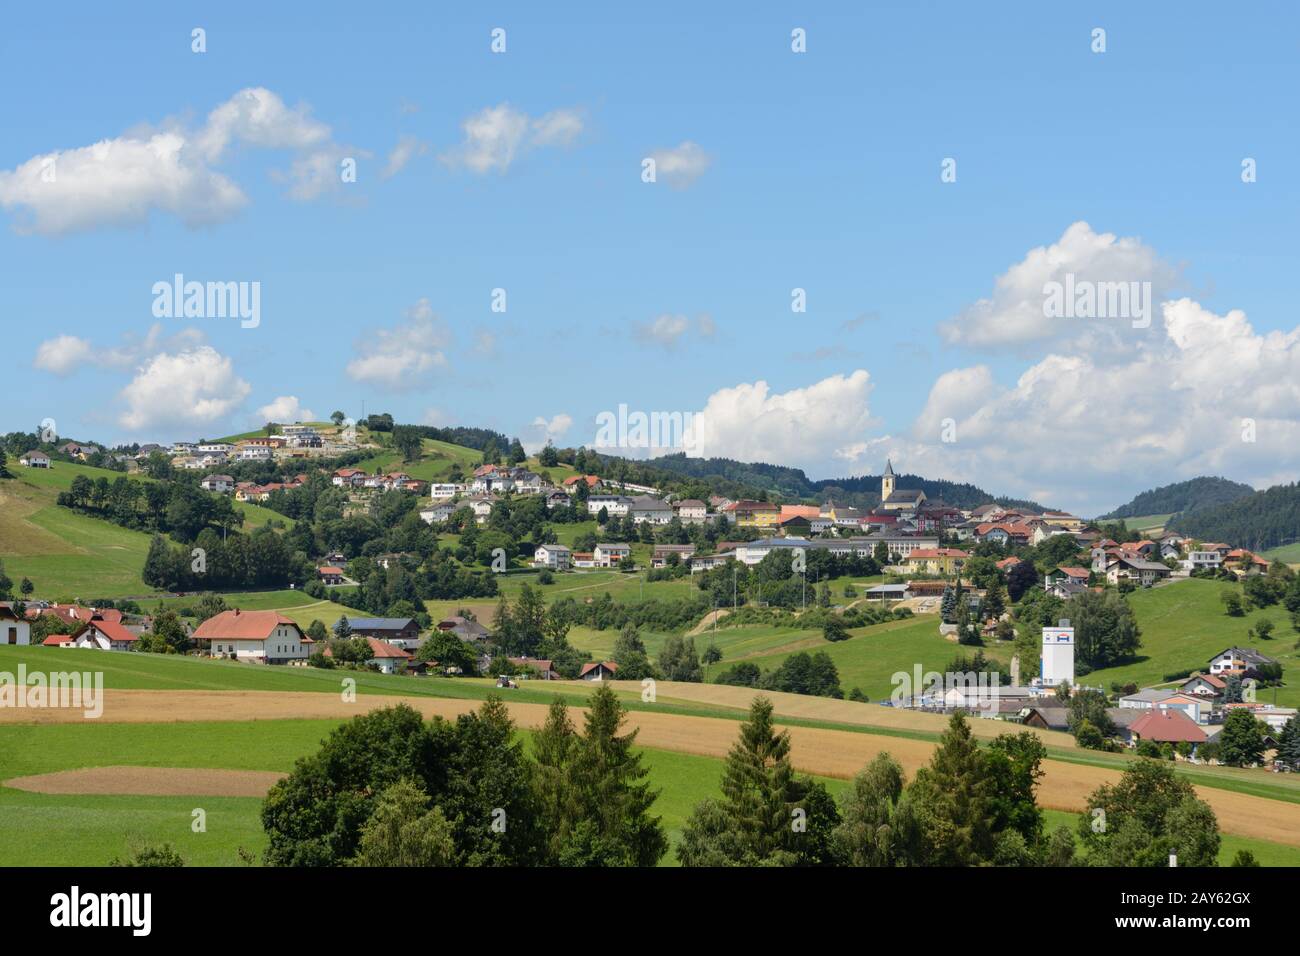 Communauté rurale idyllique Peilstein dans le Mühlviertel - Autriche Banque D'Images